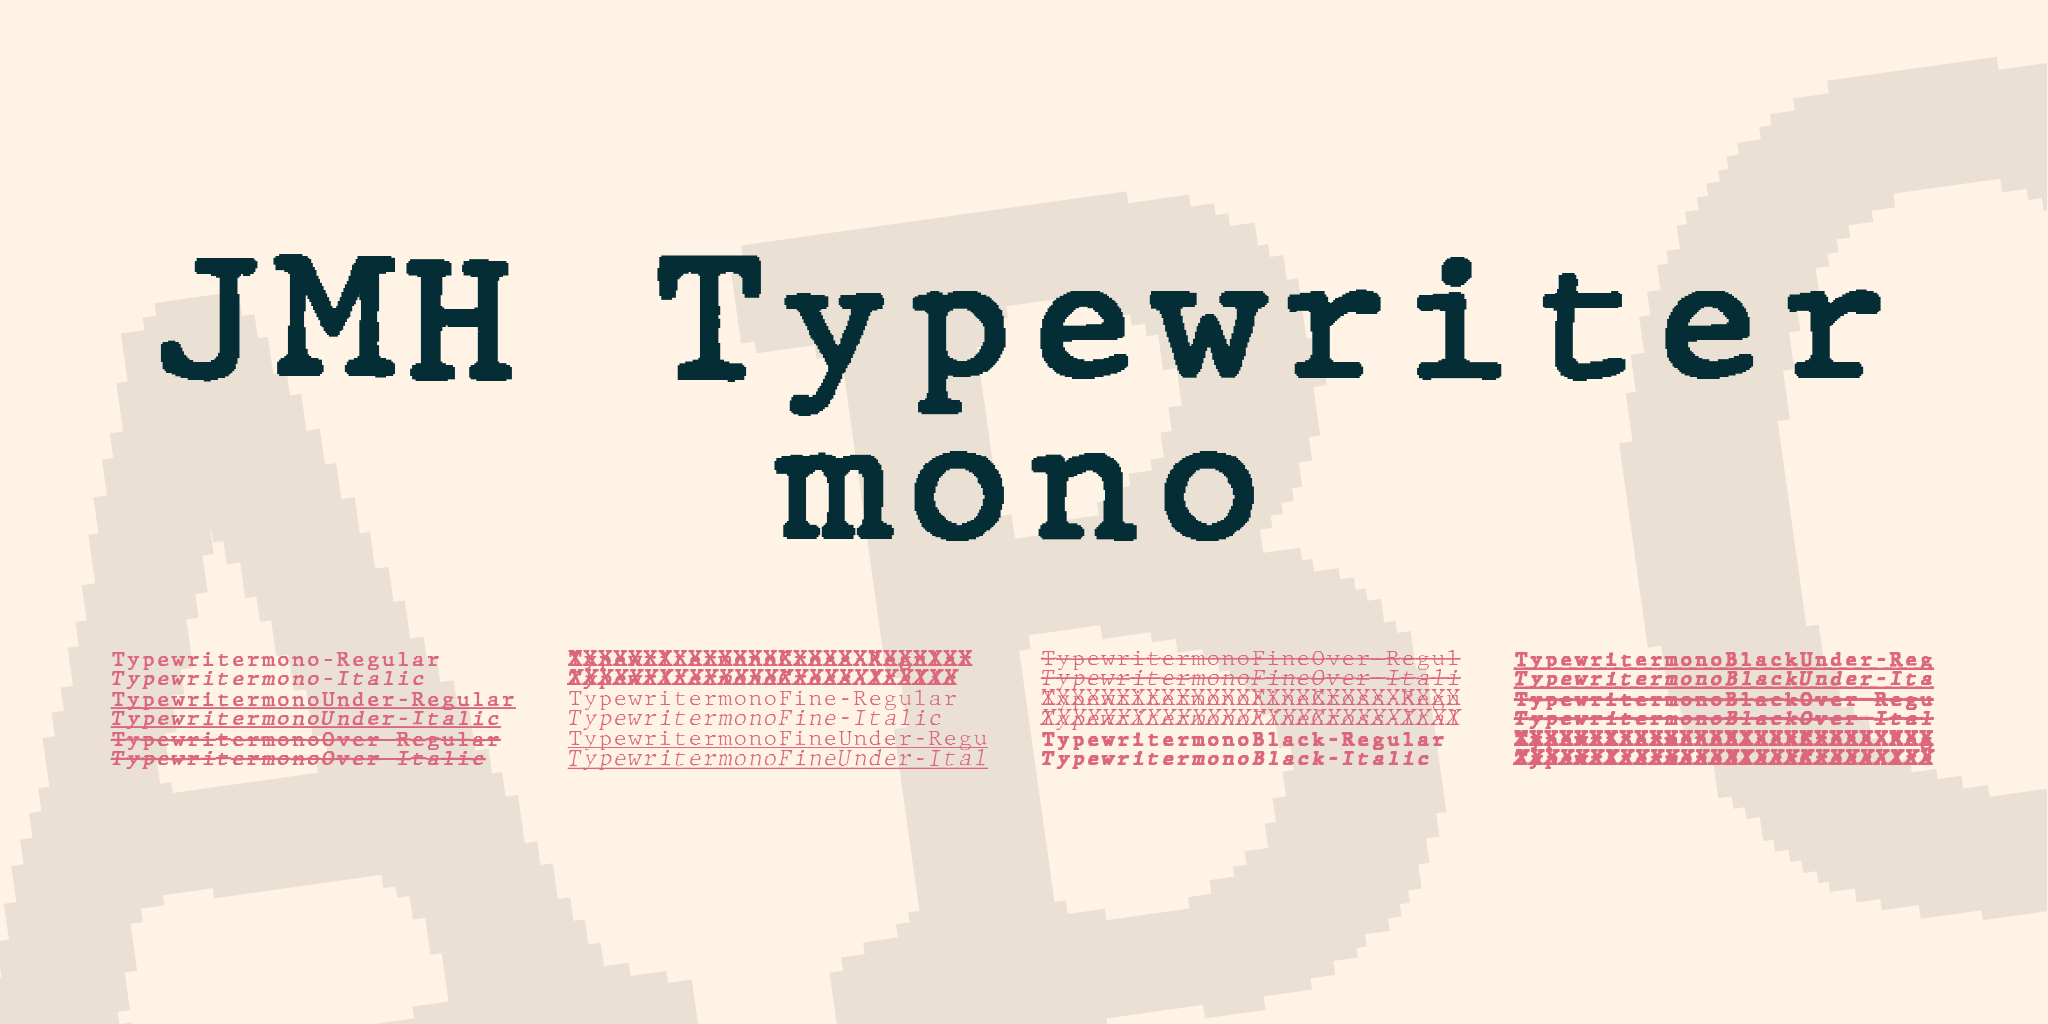 Jmh Typewriter Mono